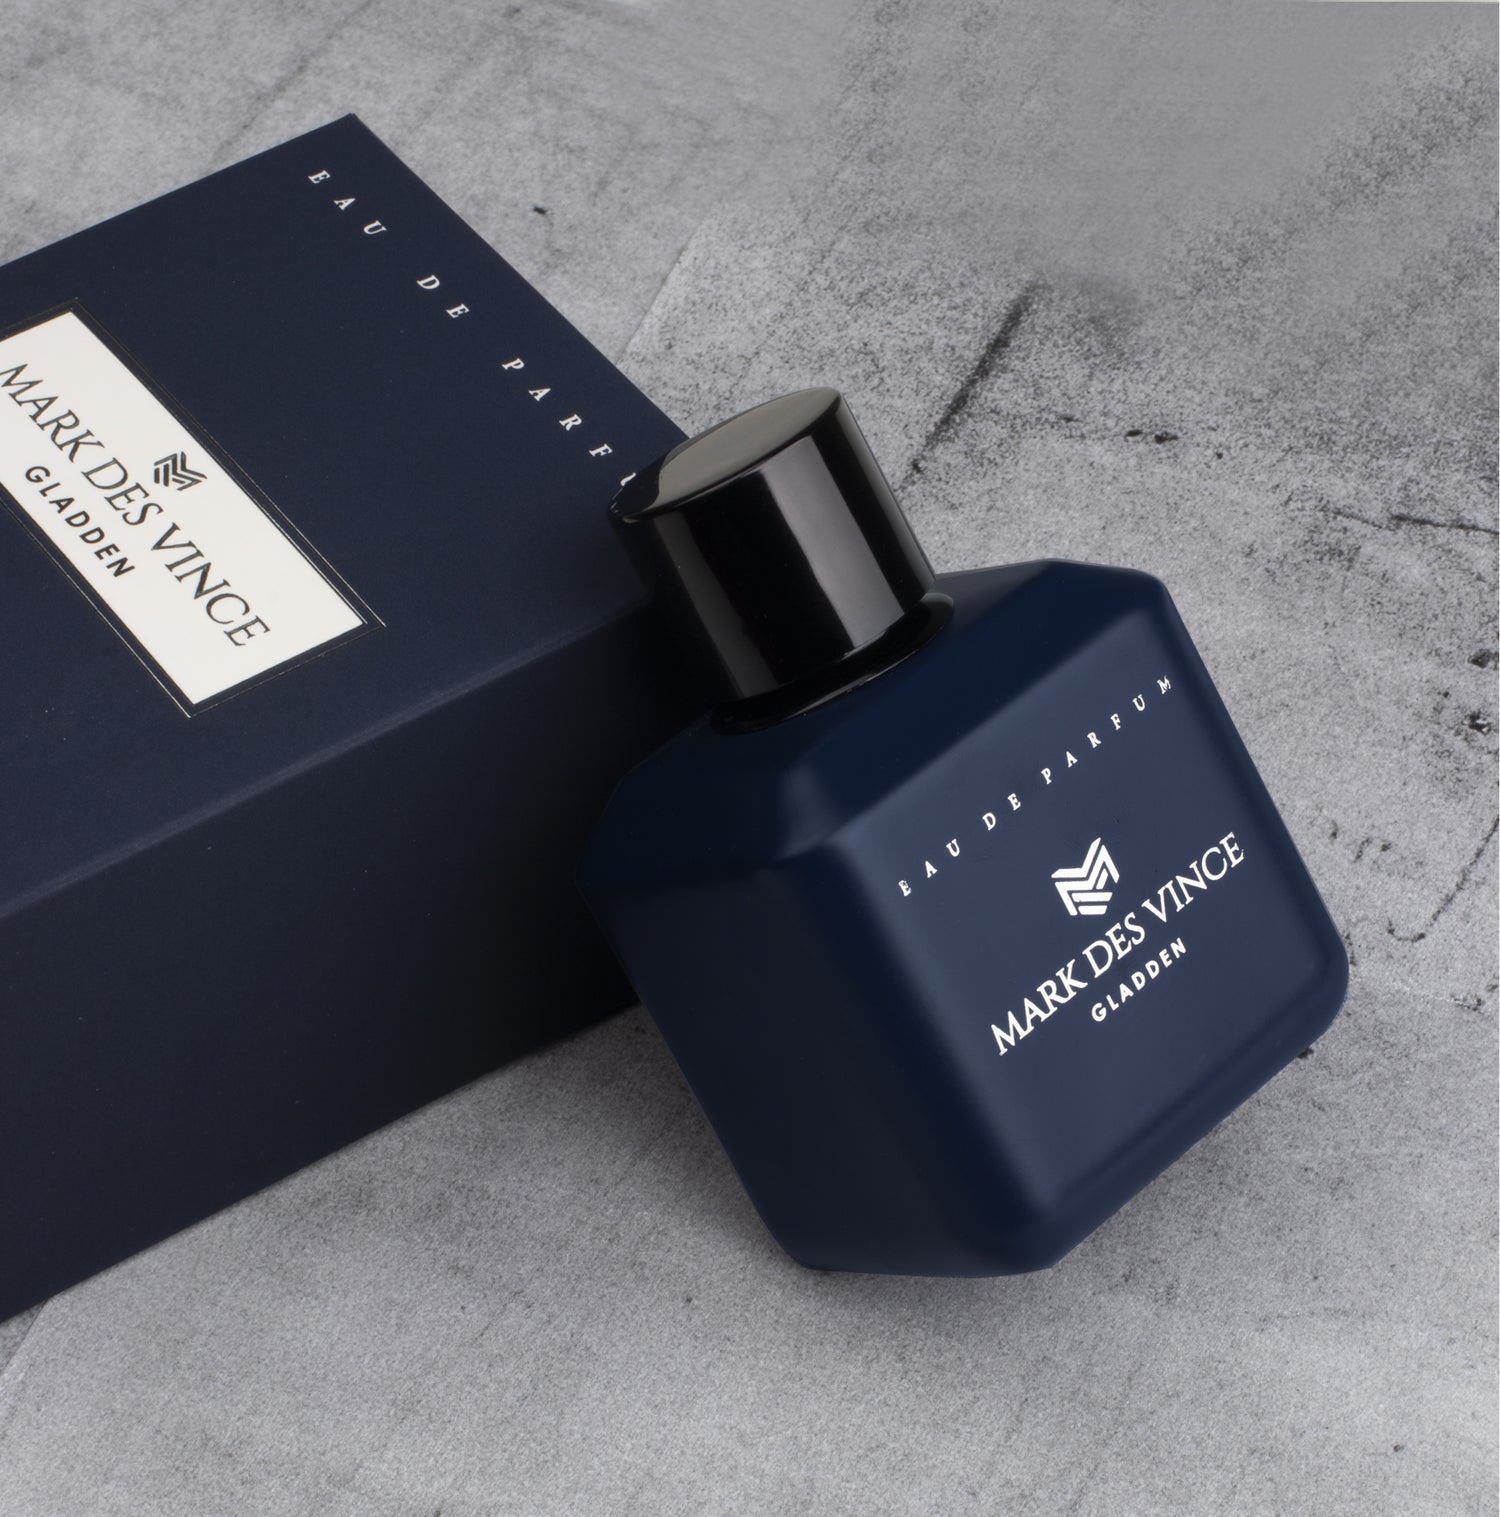 Mark Des Vince Gladden Eau De Parfum For Unisex 100ML